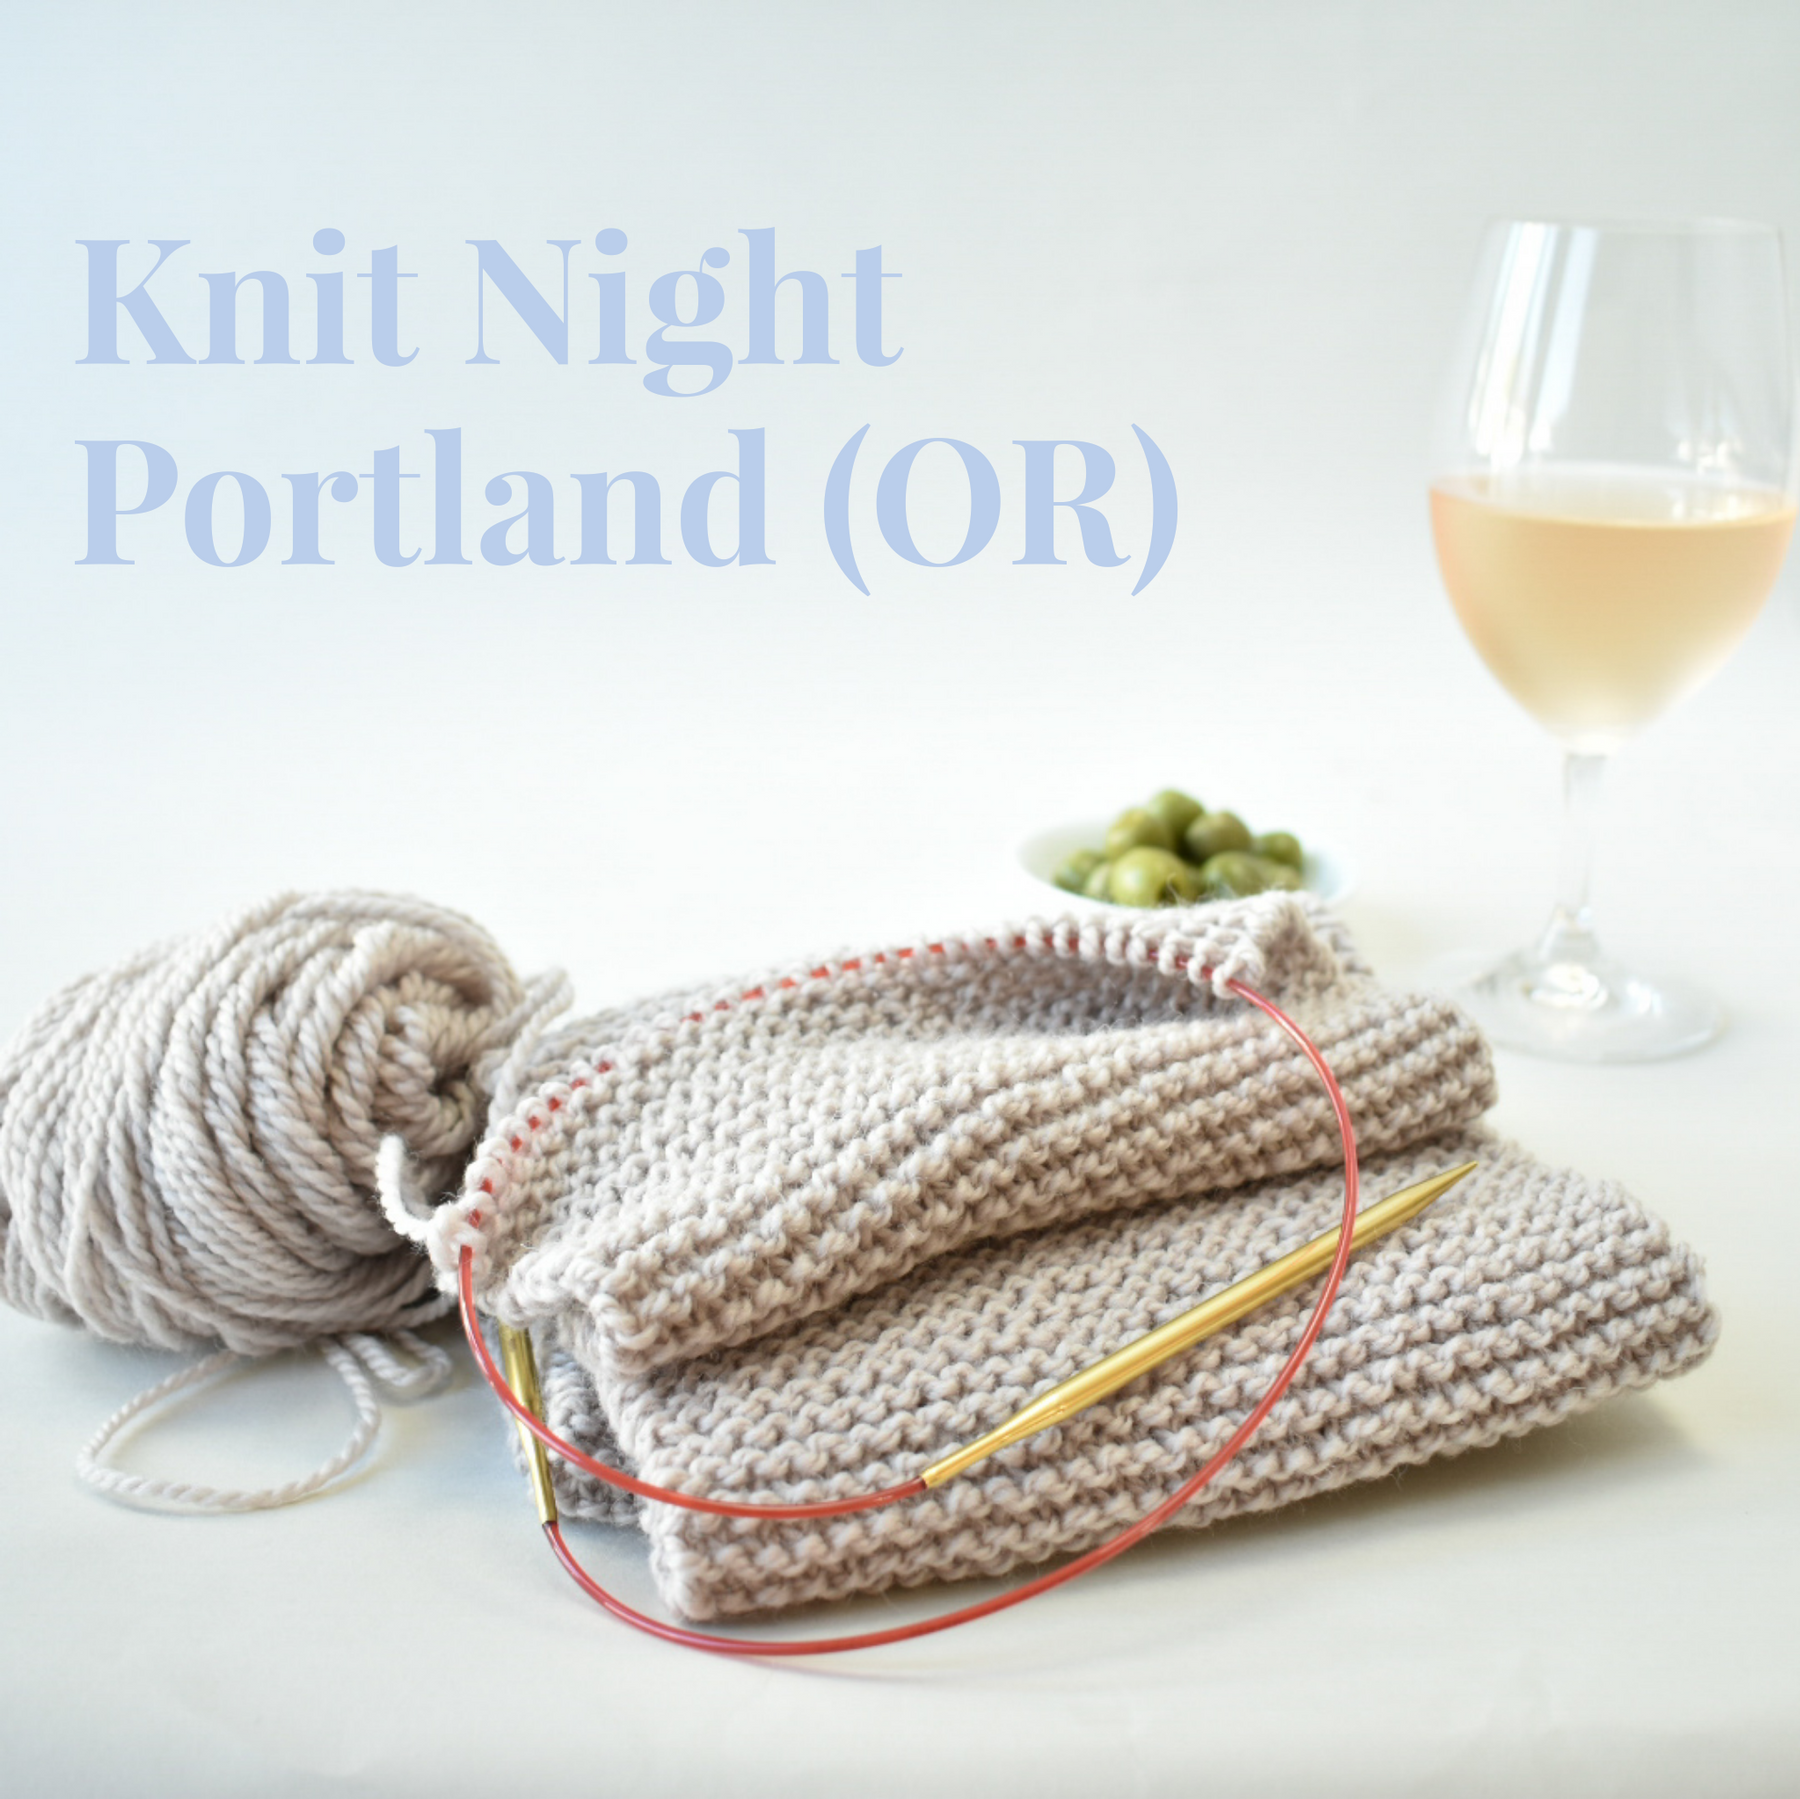 Knit Night in Portland, OR on Feb 11th!